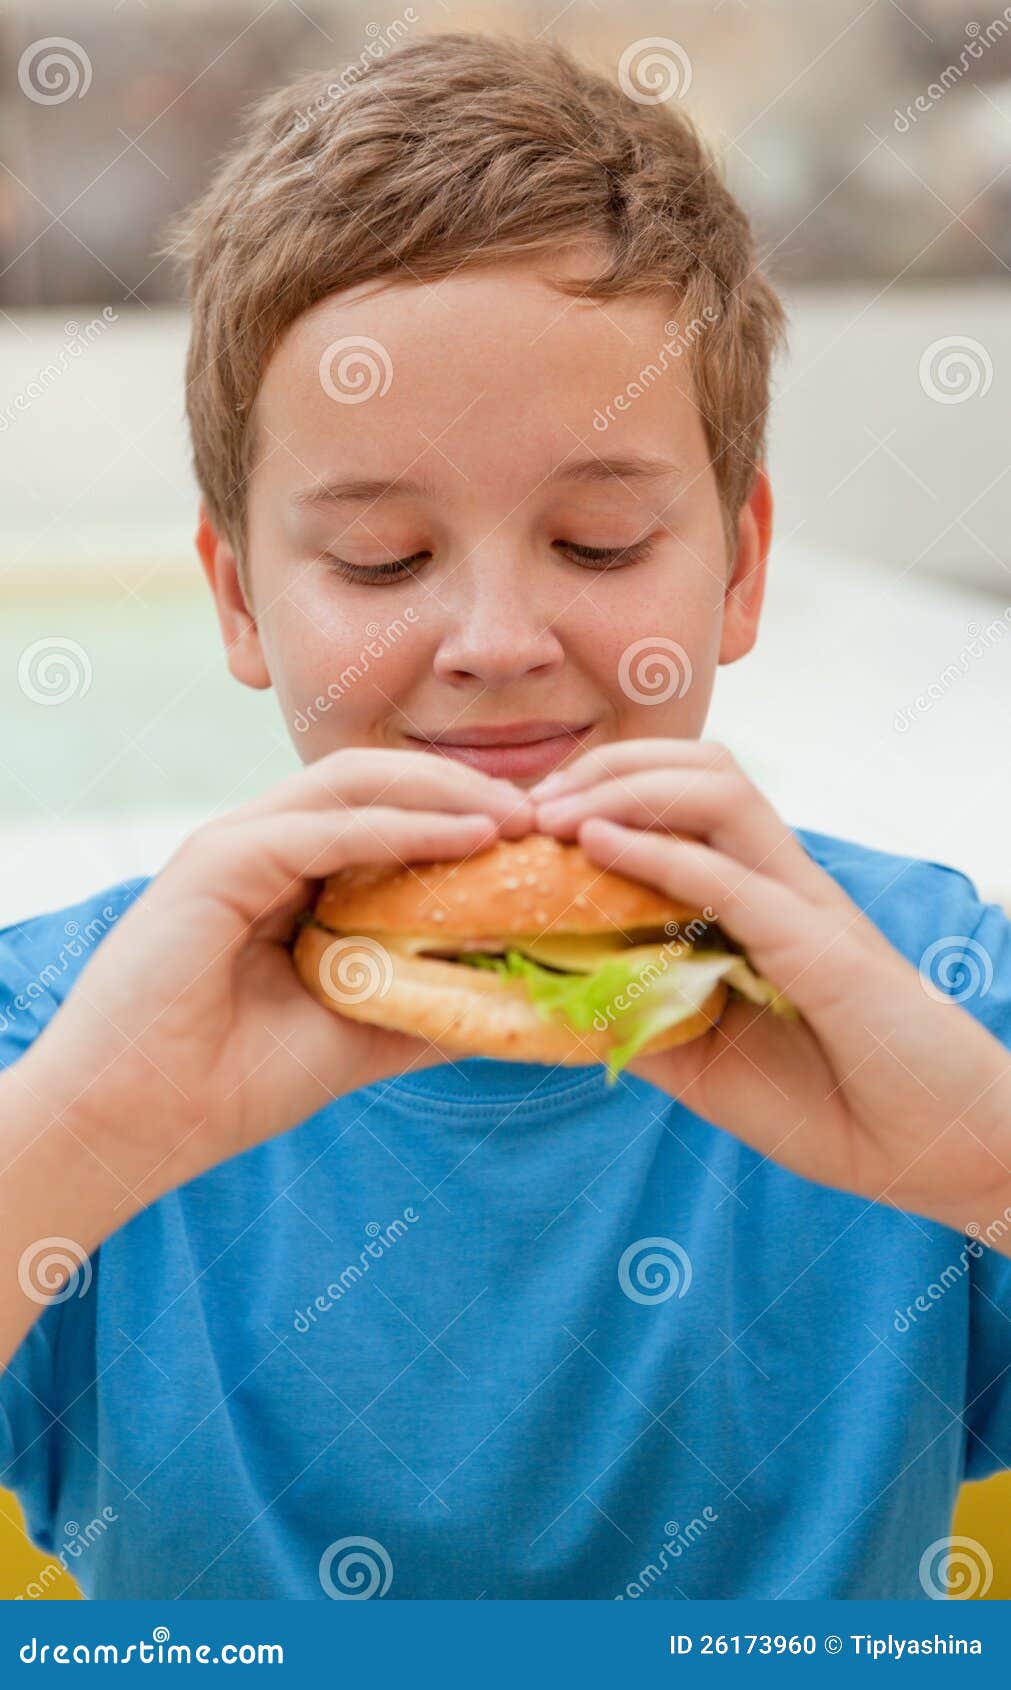 Голодные подростки. Толстый мальчик ест гамбургер. Мальчик с гамбургером. Мальчик ест бургер. Толстый мальчик ест гамбургер карточка.